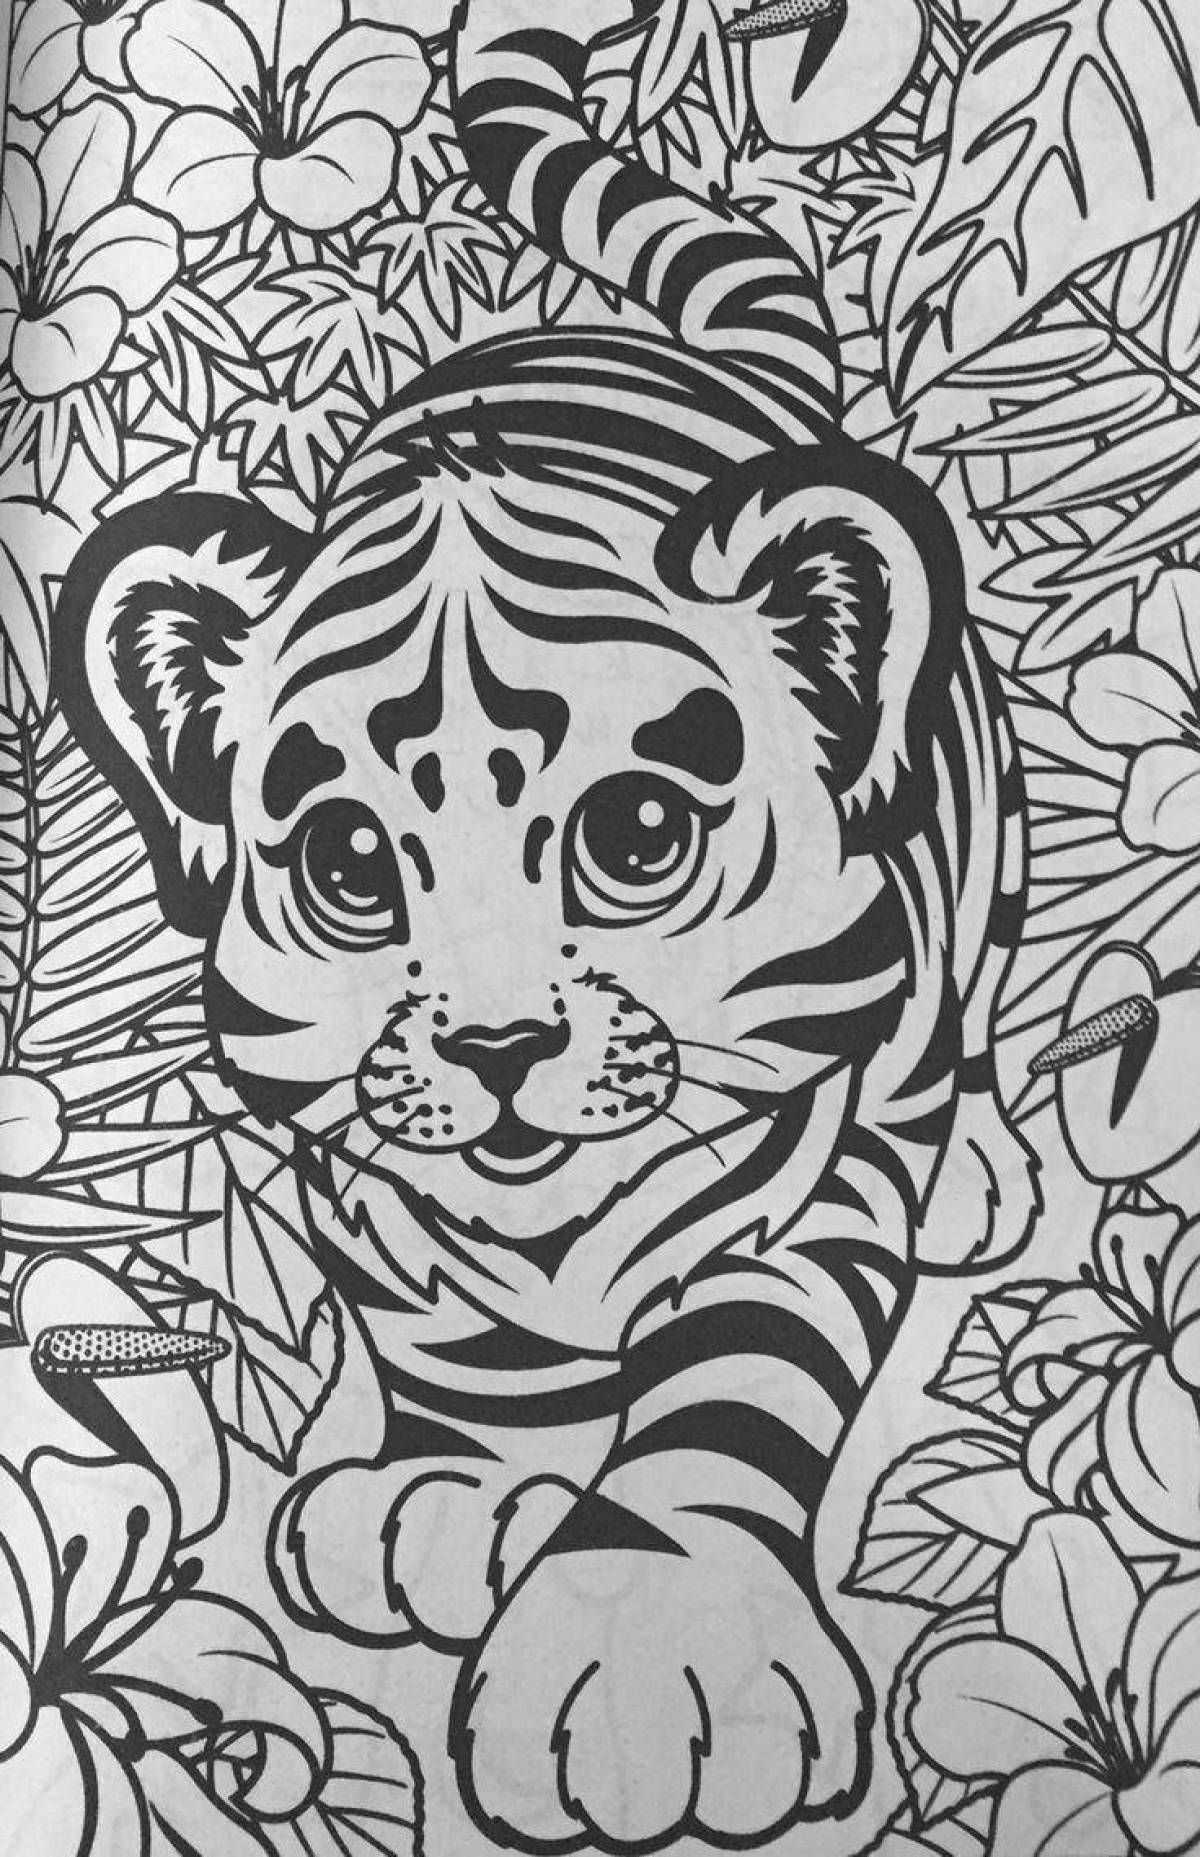 Live coloring antistress tiger cub